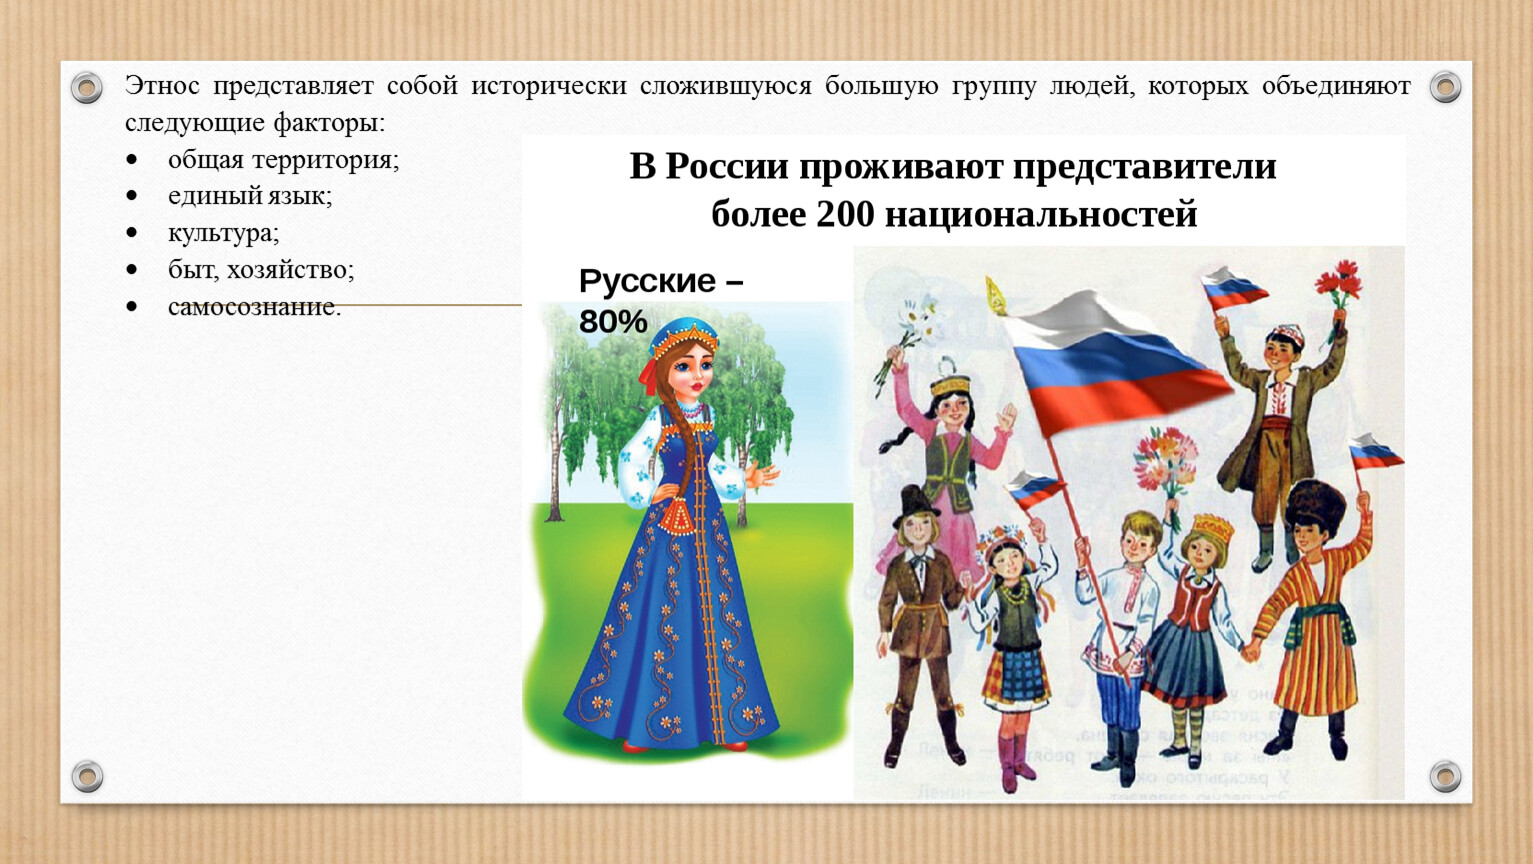 Какой народ является самым северным народом евразии. Особенности разных этносов. Выделение нации в России. Какие этнические группы есть в России. Большая группа людей,Объединенная общей территорией.